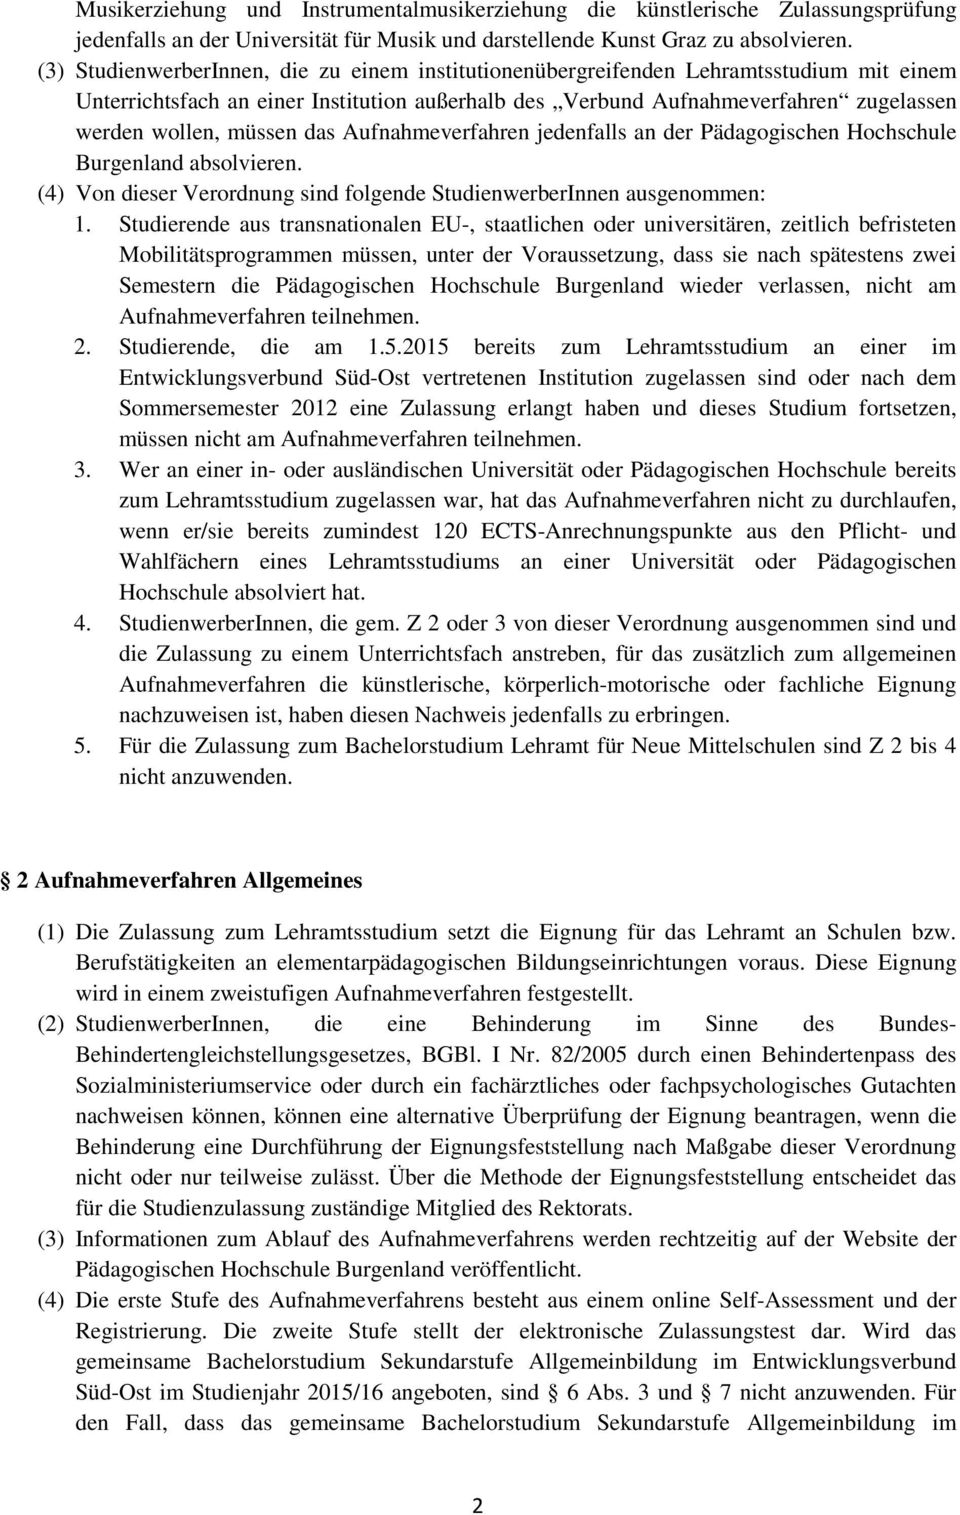 müssen das Aufnahmeverfahren jedenfalls an der Pädagogischen Hochschule Burgenland absolvieren. (4) Von dieser Verordnung sind folgende StudienwerberInnen ausgenommen: 1.